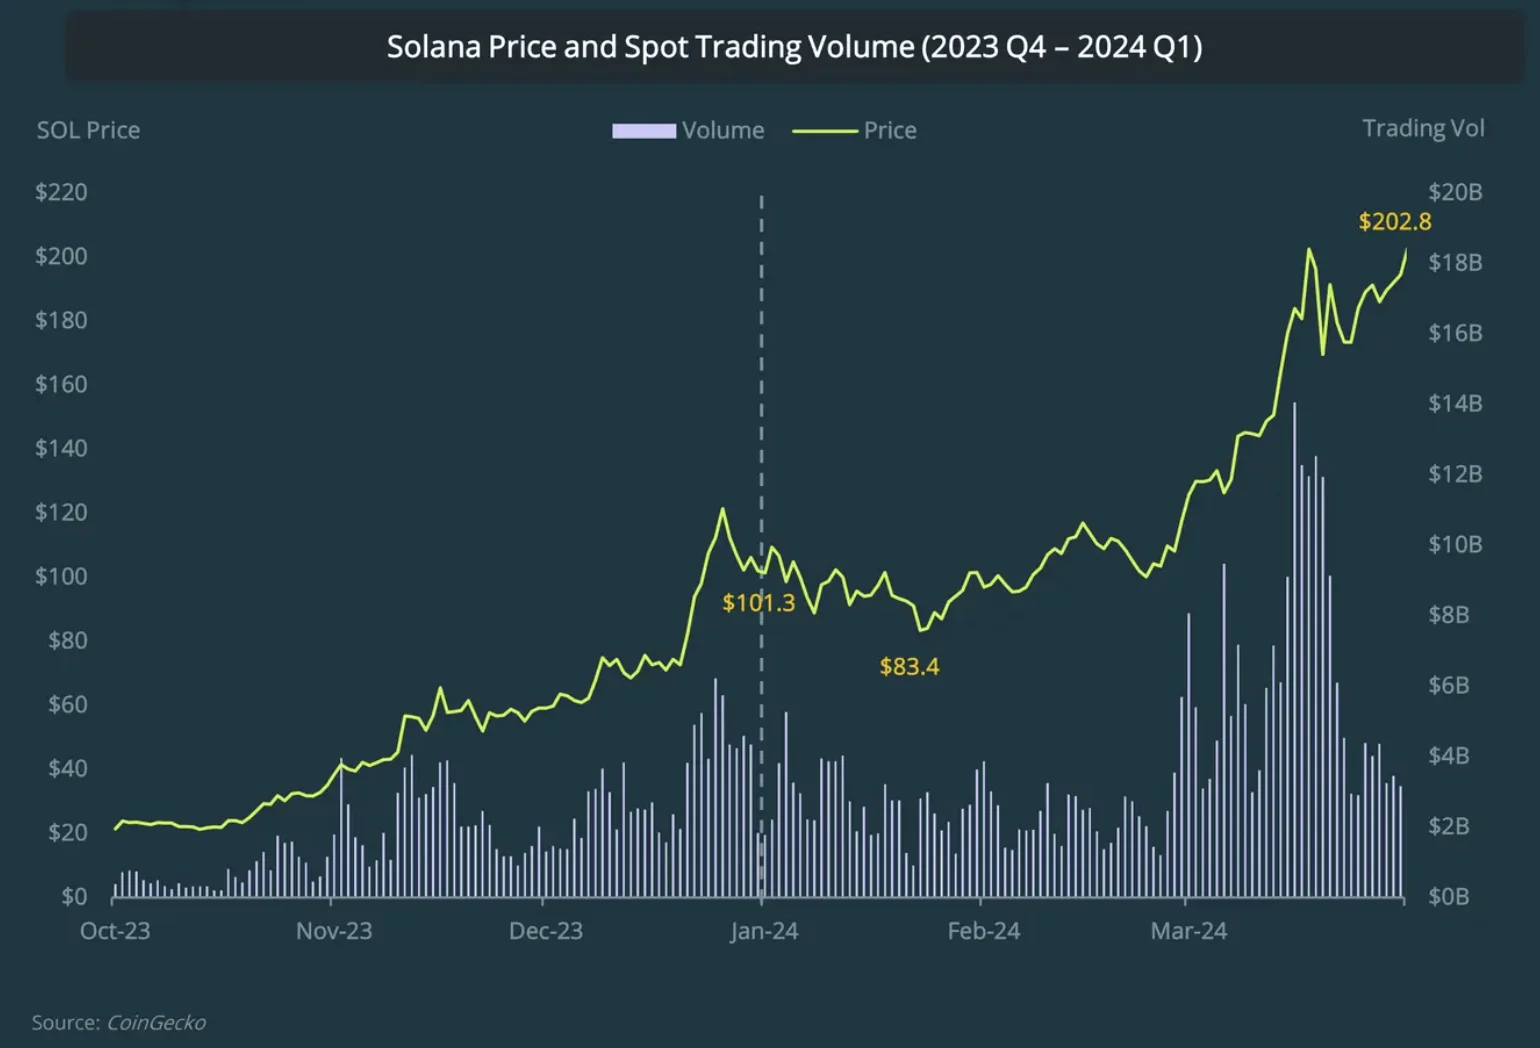 SOL Price vs. Trading Volume